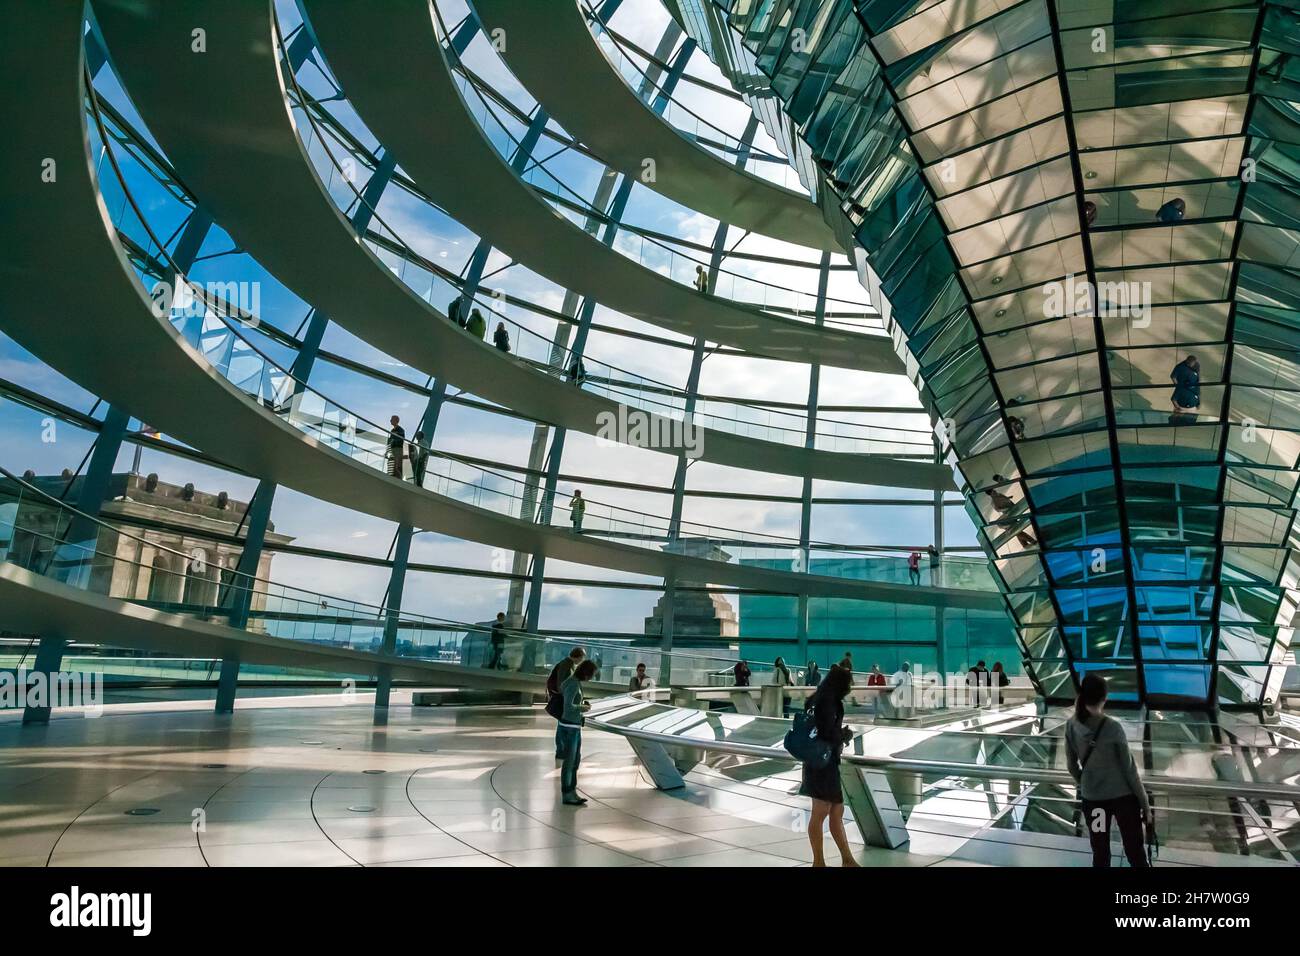 Superbe vue sur les rampes en spirale d'acier entourant la structure en cône miroir à l'intérieur du dôme en verre du bâtiment Reichstag à Berlin, en Allemagne. Banque D'Images